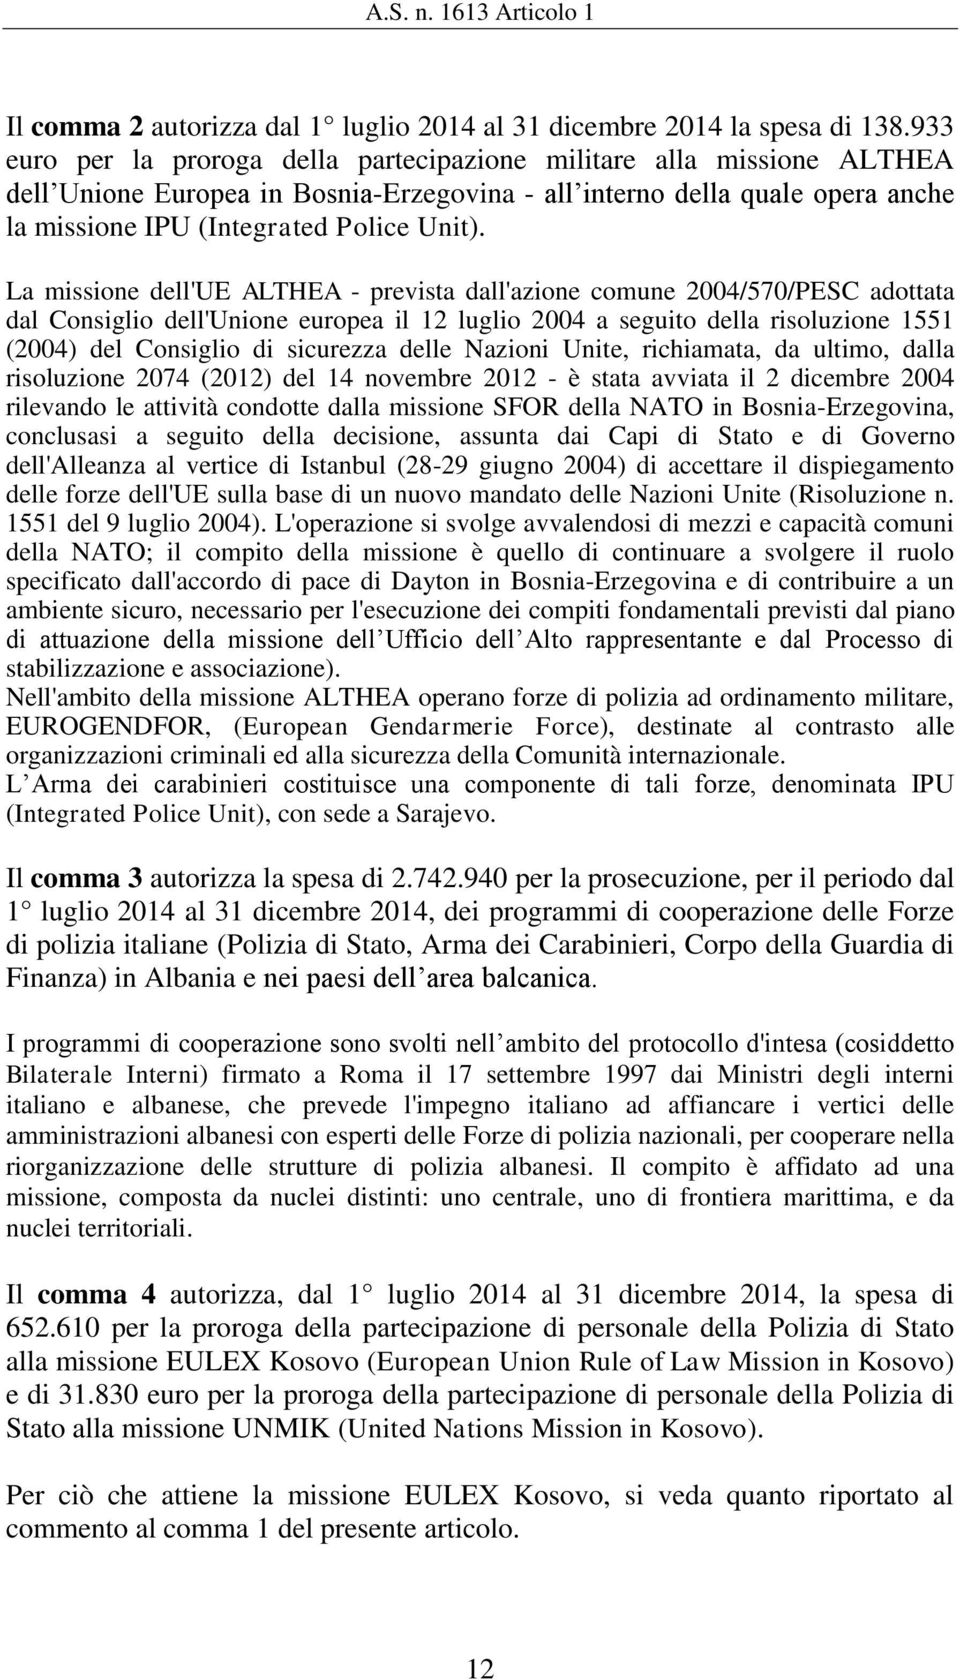 La missione dell'ue ALTHEA - prevista dall'azione comune 2004/570/PESC adottata dal Consiglio dell'unione europea il 12 luglio 2004 a seguito della risoluzione 1551 (2004) del Consiglio di sicurezza